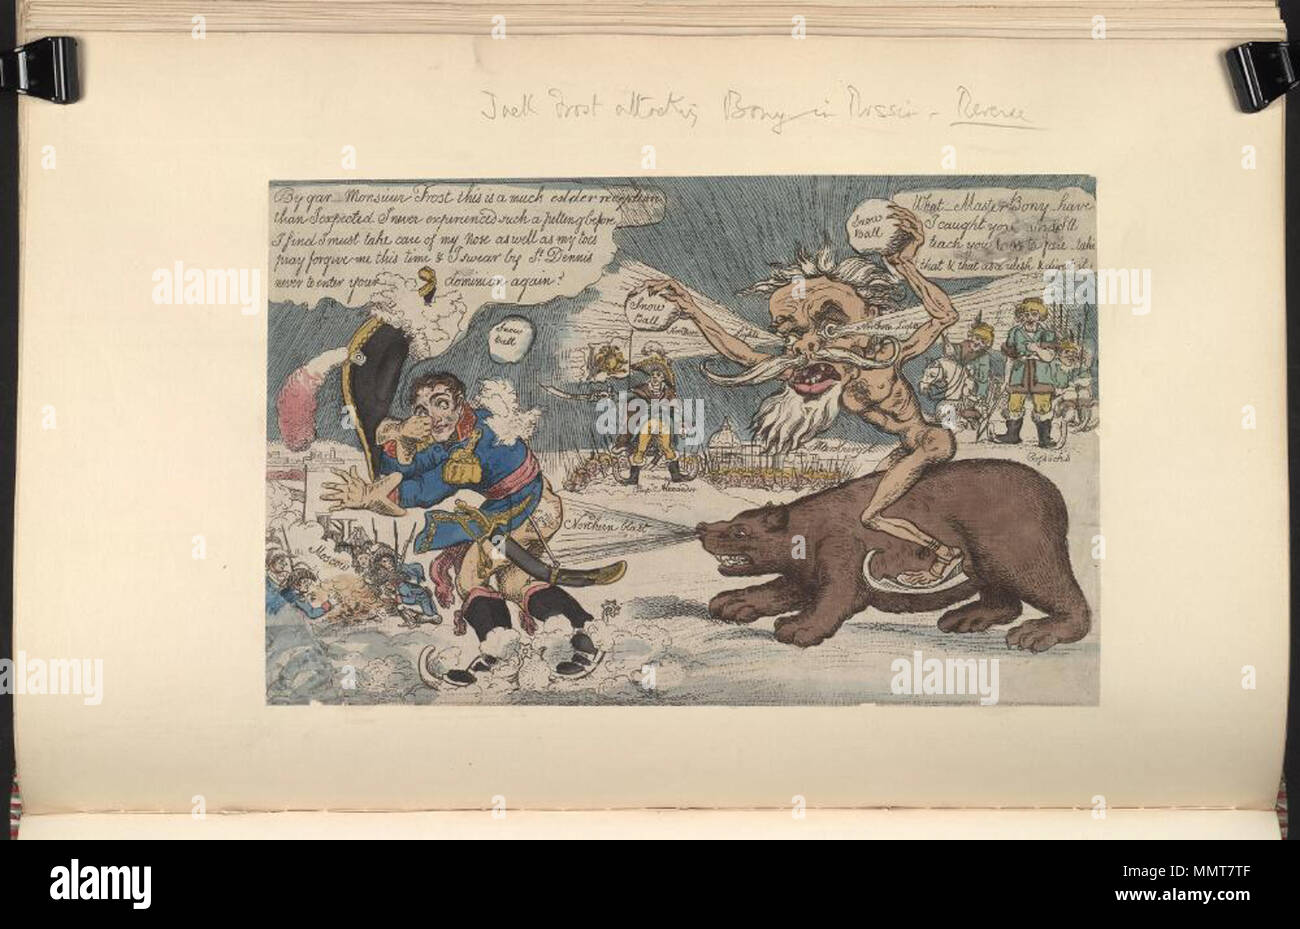 . La satire de la campagne de Russie de Napoléon. (La caricature politique) Jack Frost attaque Bony en Russie. [1812]. Les bibliothèques Bodleian, Jack Frost attaque Bony en Russie Banque D'Images